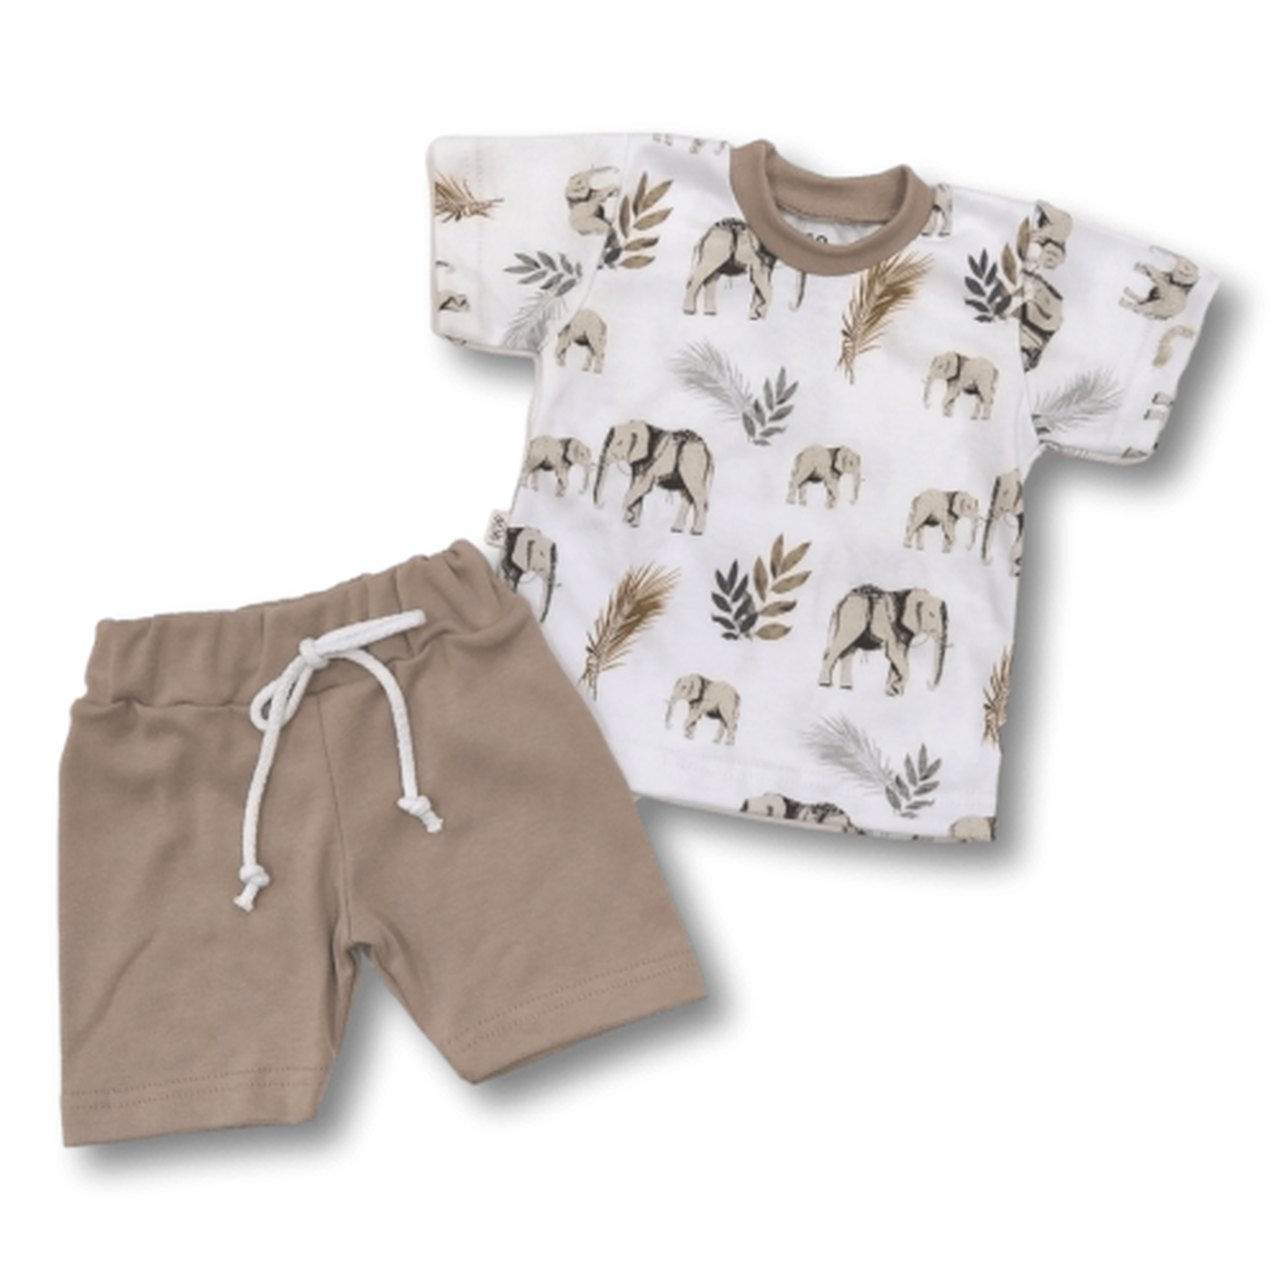 Kasia-Ubranka-Komplet „Słonie” biała koszulka i brązowe spodenki